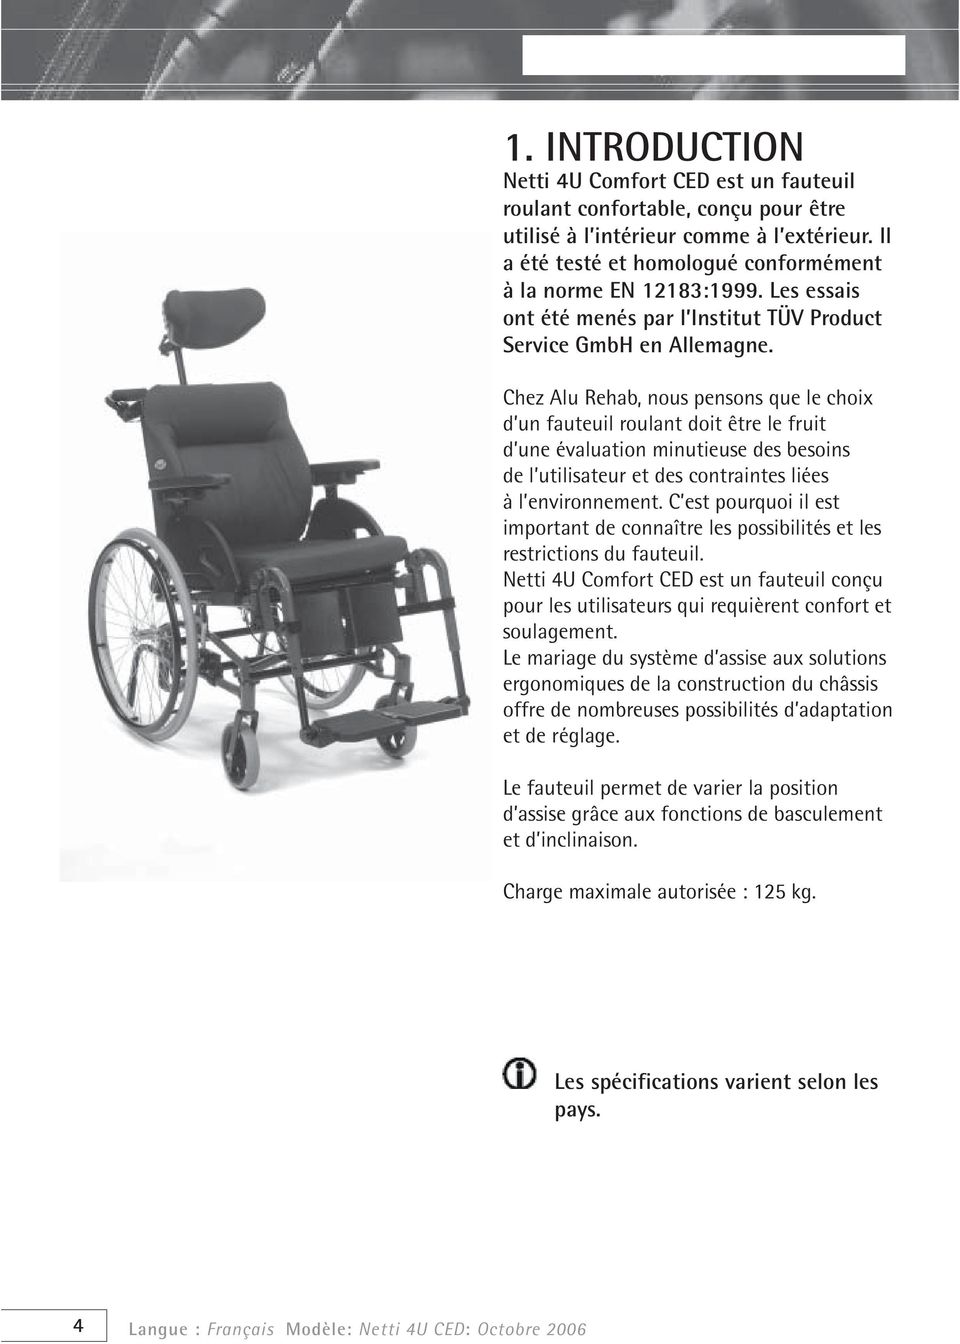 Chez Alu Rehab, nous pensons que le choix d un fauteuil roulant doit être le fruit d une évaluation minutieuse des besoins de l utilisateur et des contraintes liées à l environnement.